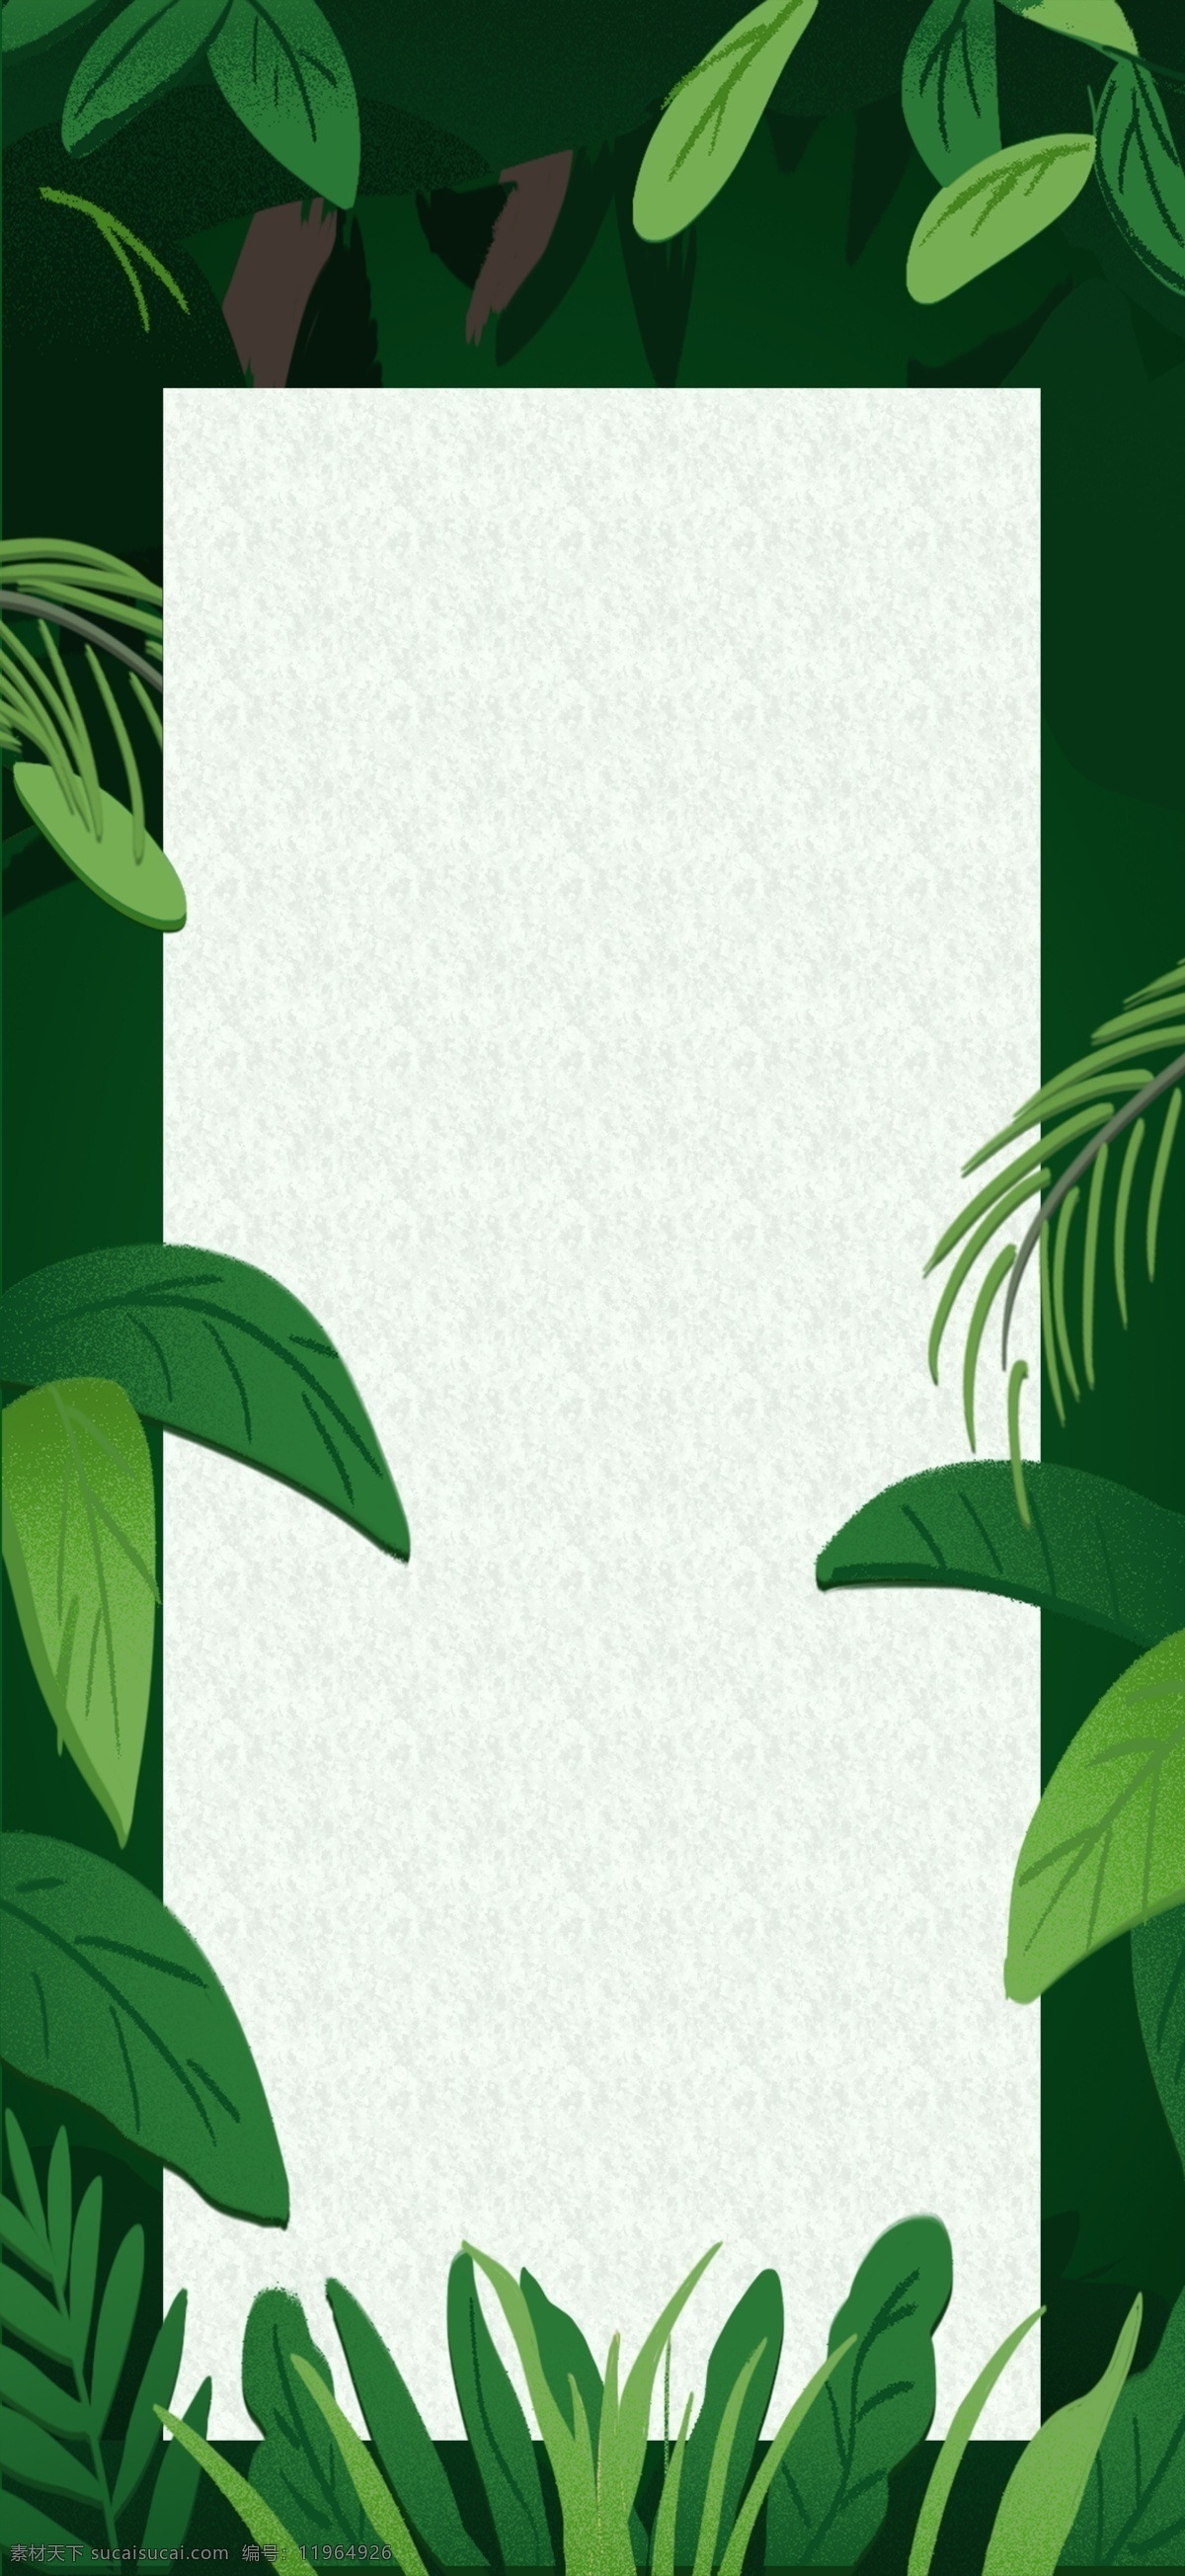 热带树叶背景 热带植物 树叶 绿色叶子 龟背竹 底纹边框 背景底纹 水彩 夏季 花边花纹 卡片 名片卡片 叶子 热带雨林 热带花卉 自然景观 自然风光